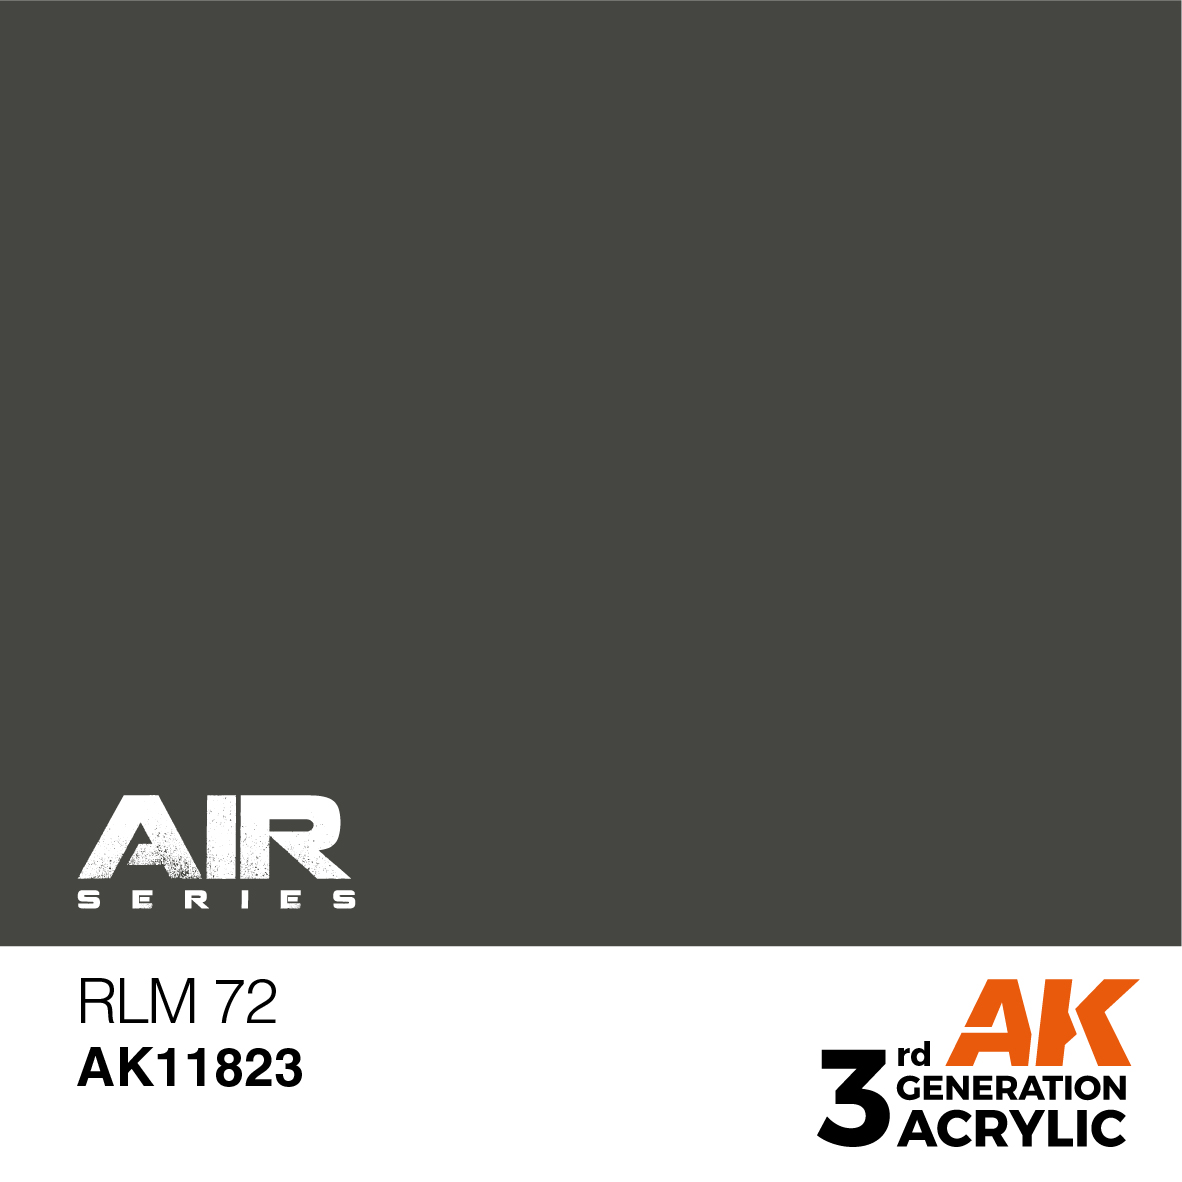 RLM 72 – AIR